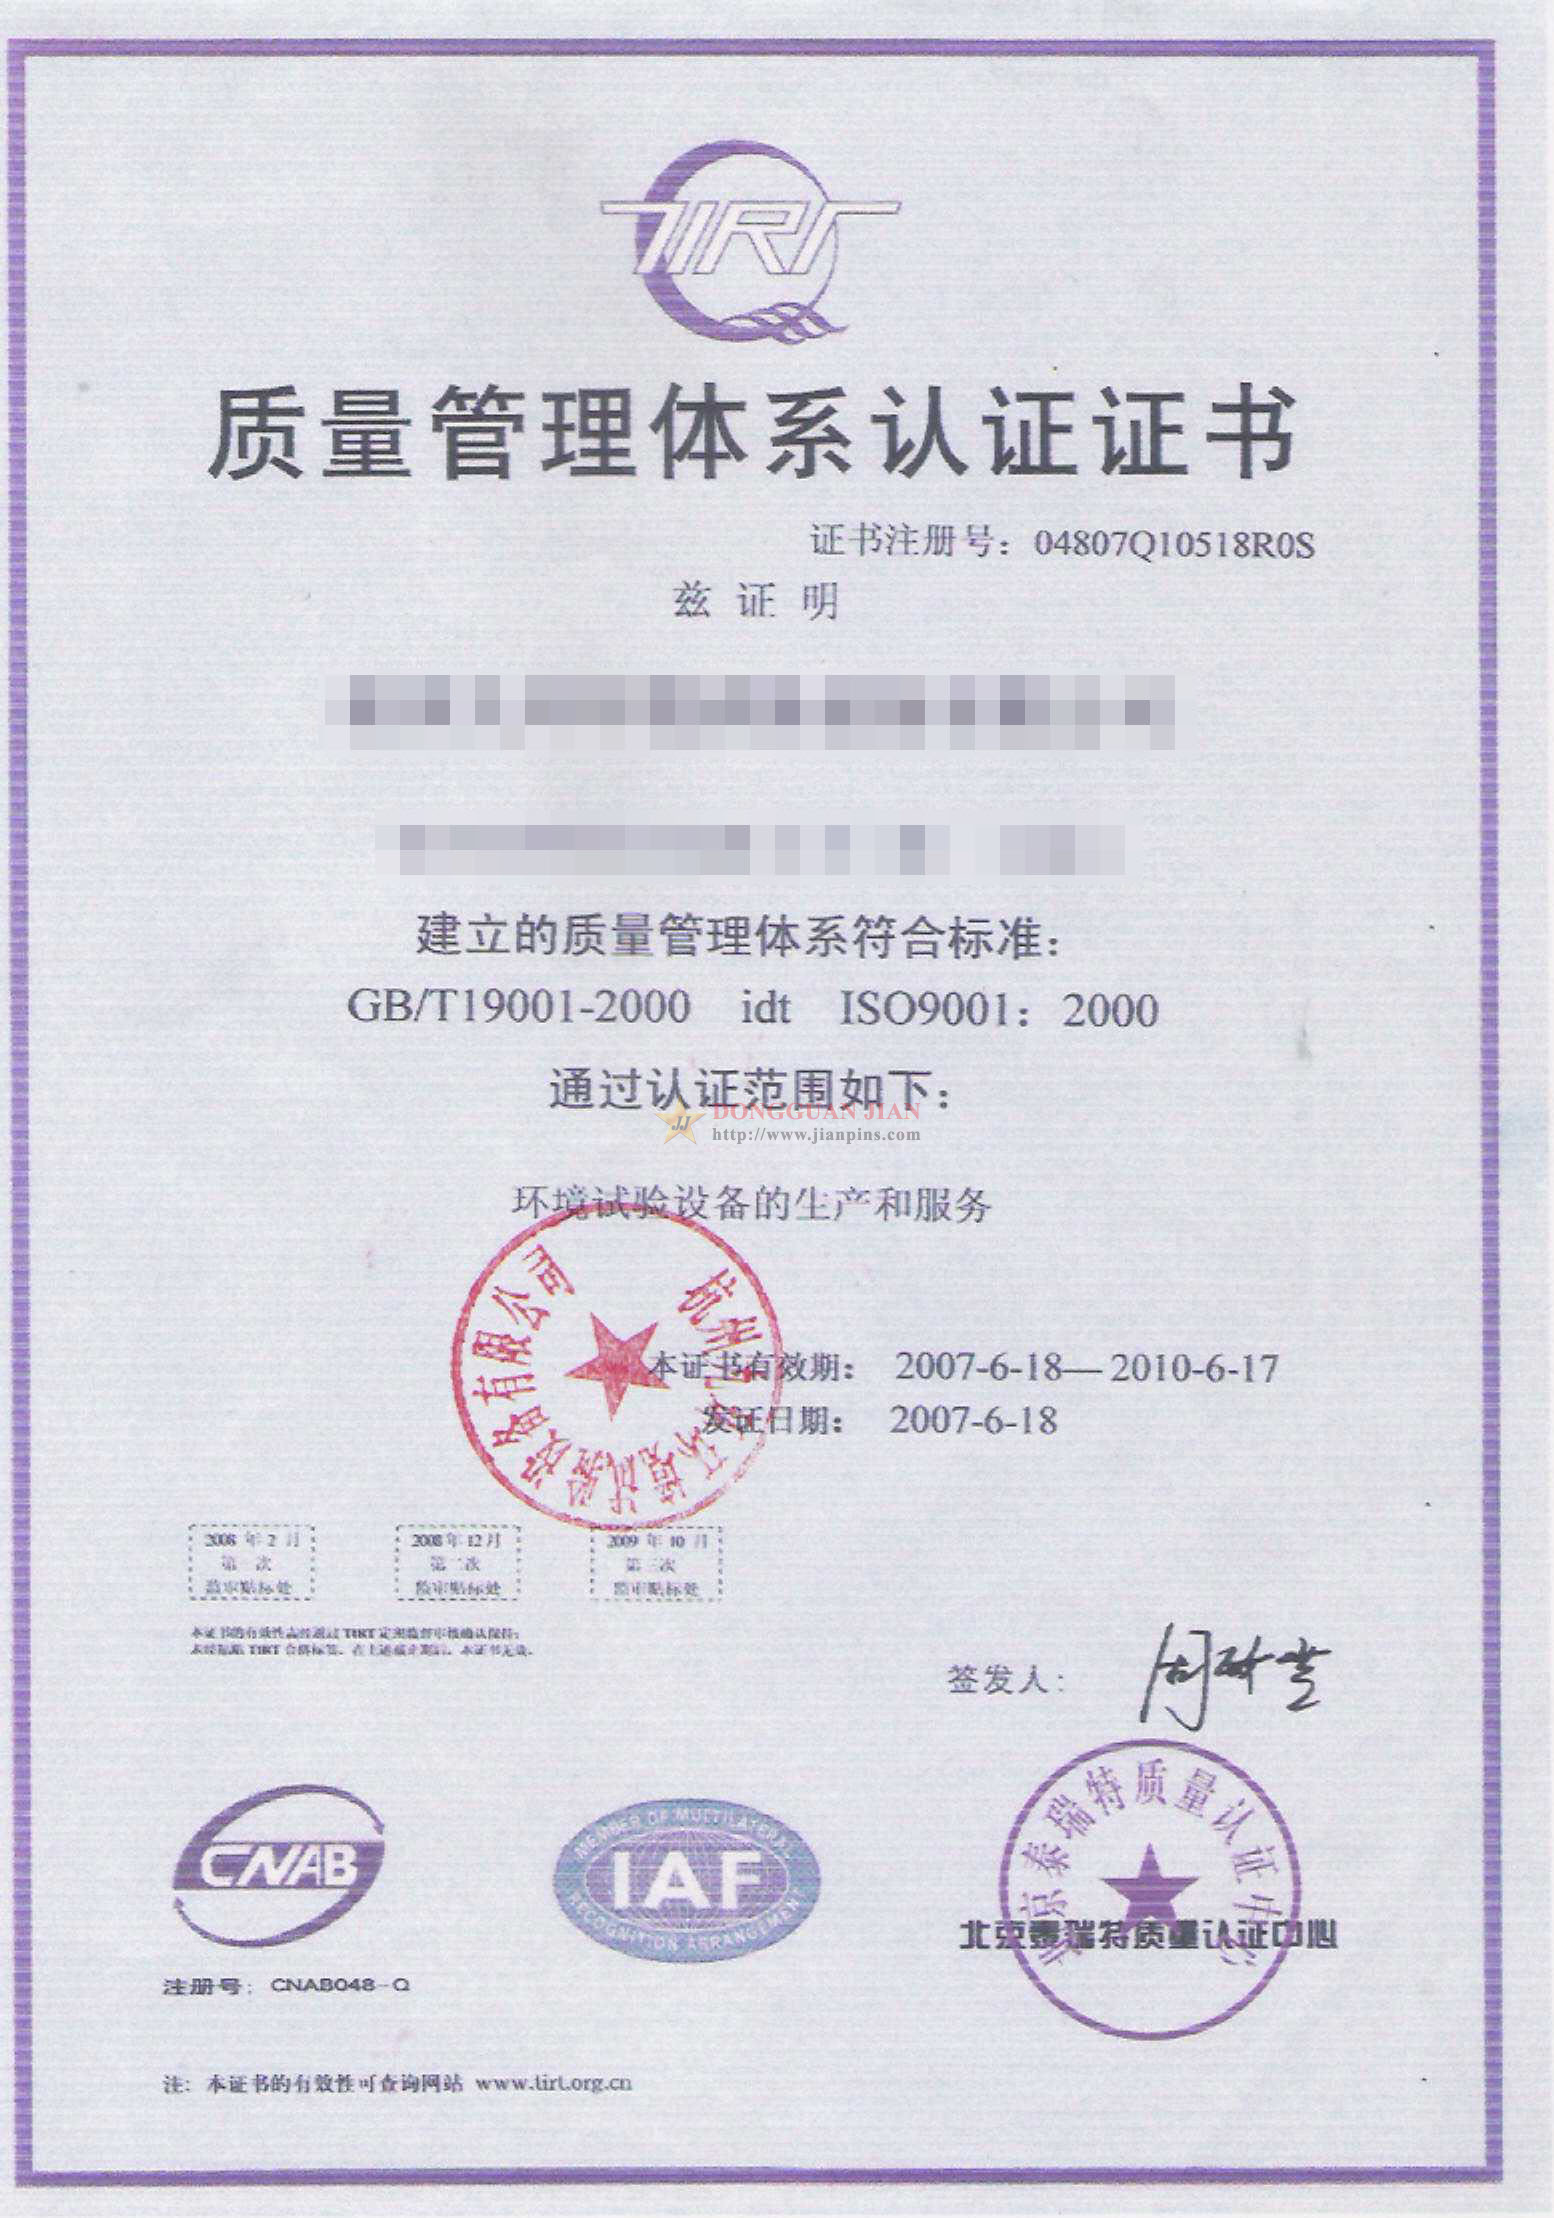 Certificaten6